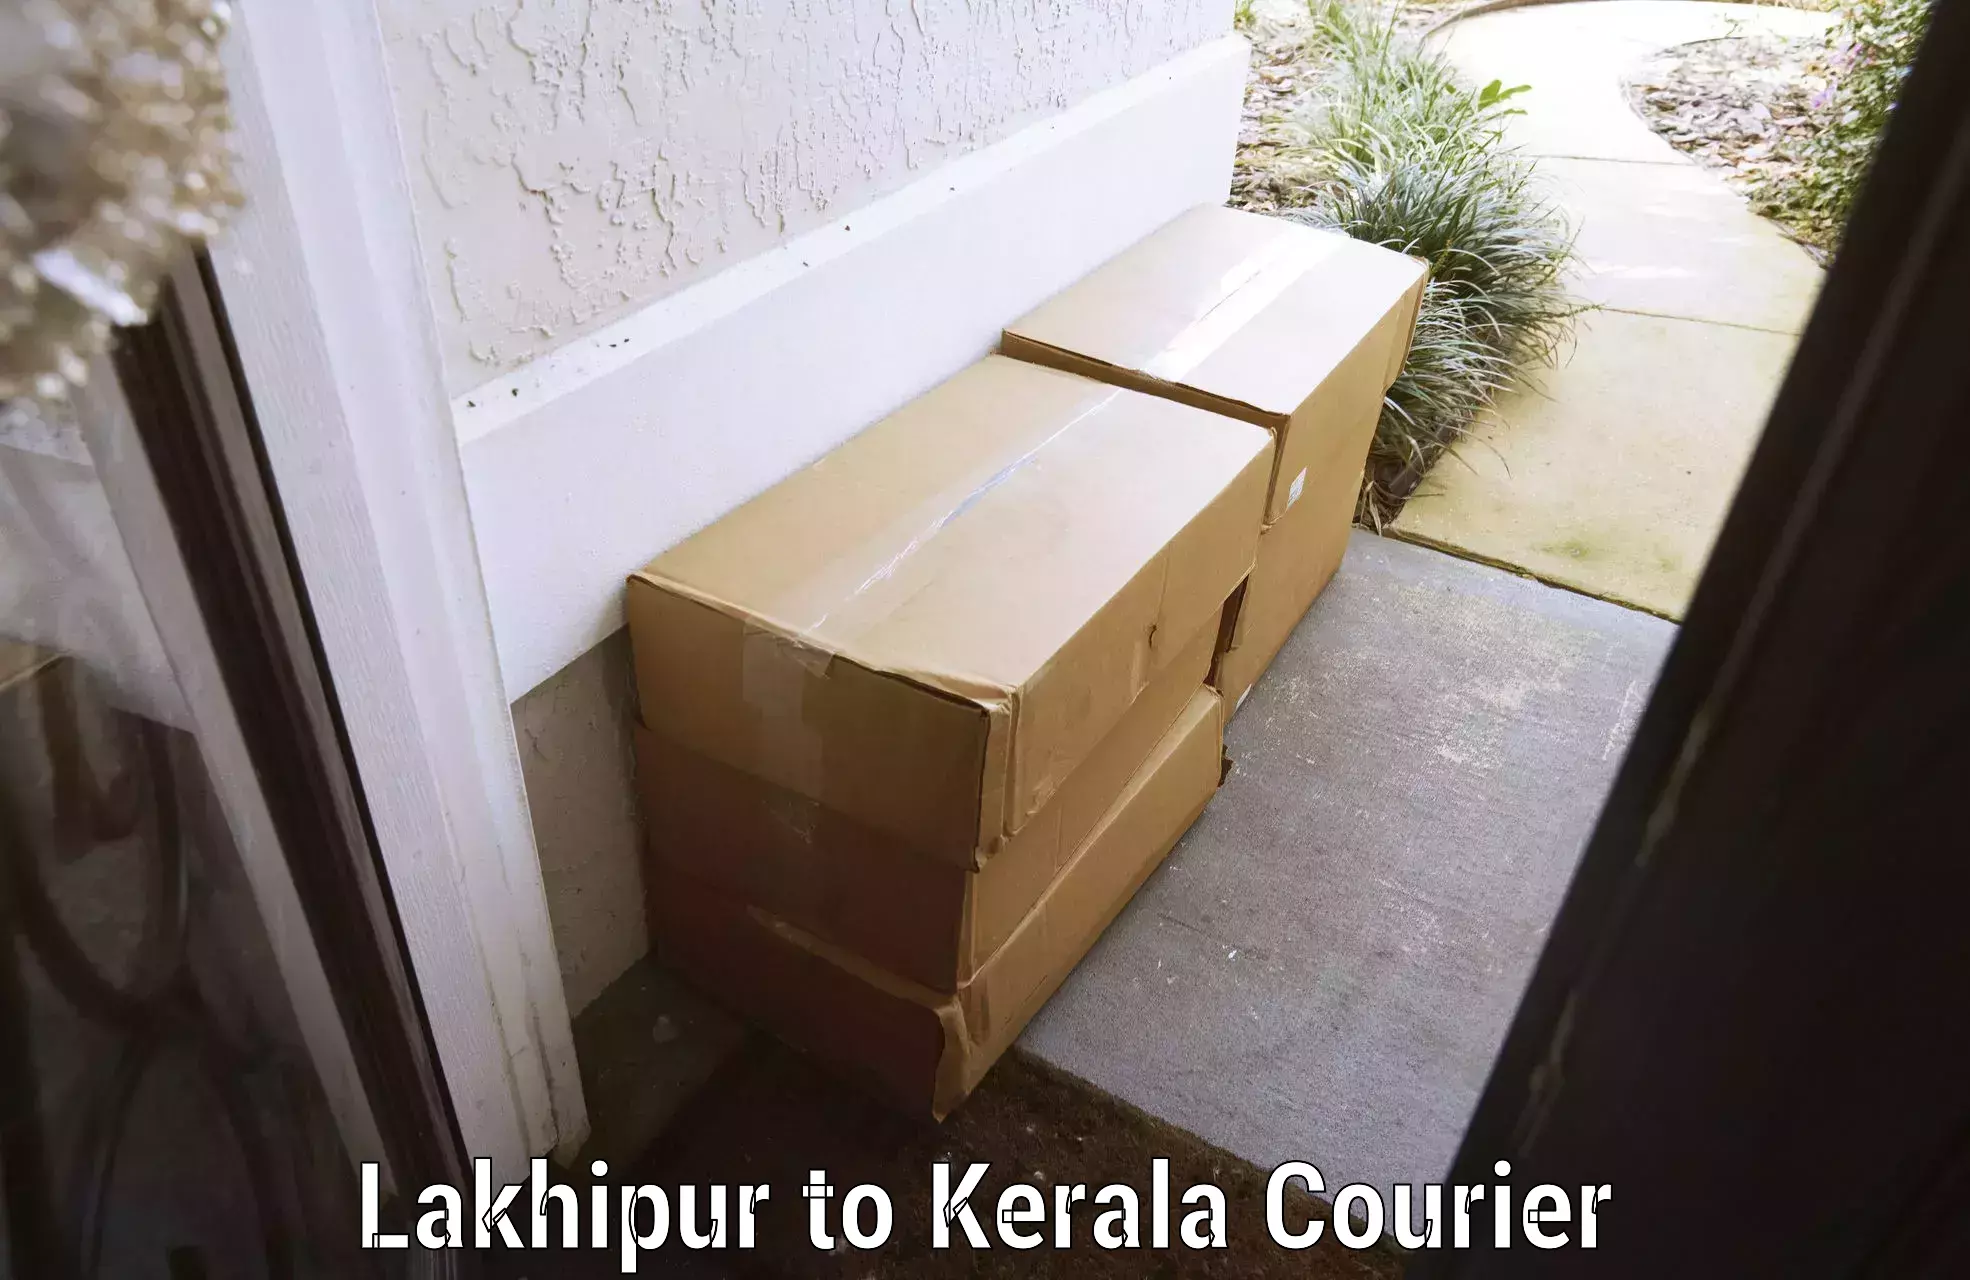 Baggage transport coordination Lakhipur to Thiruvananthapuram